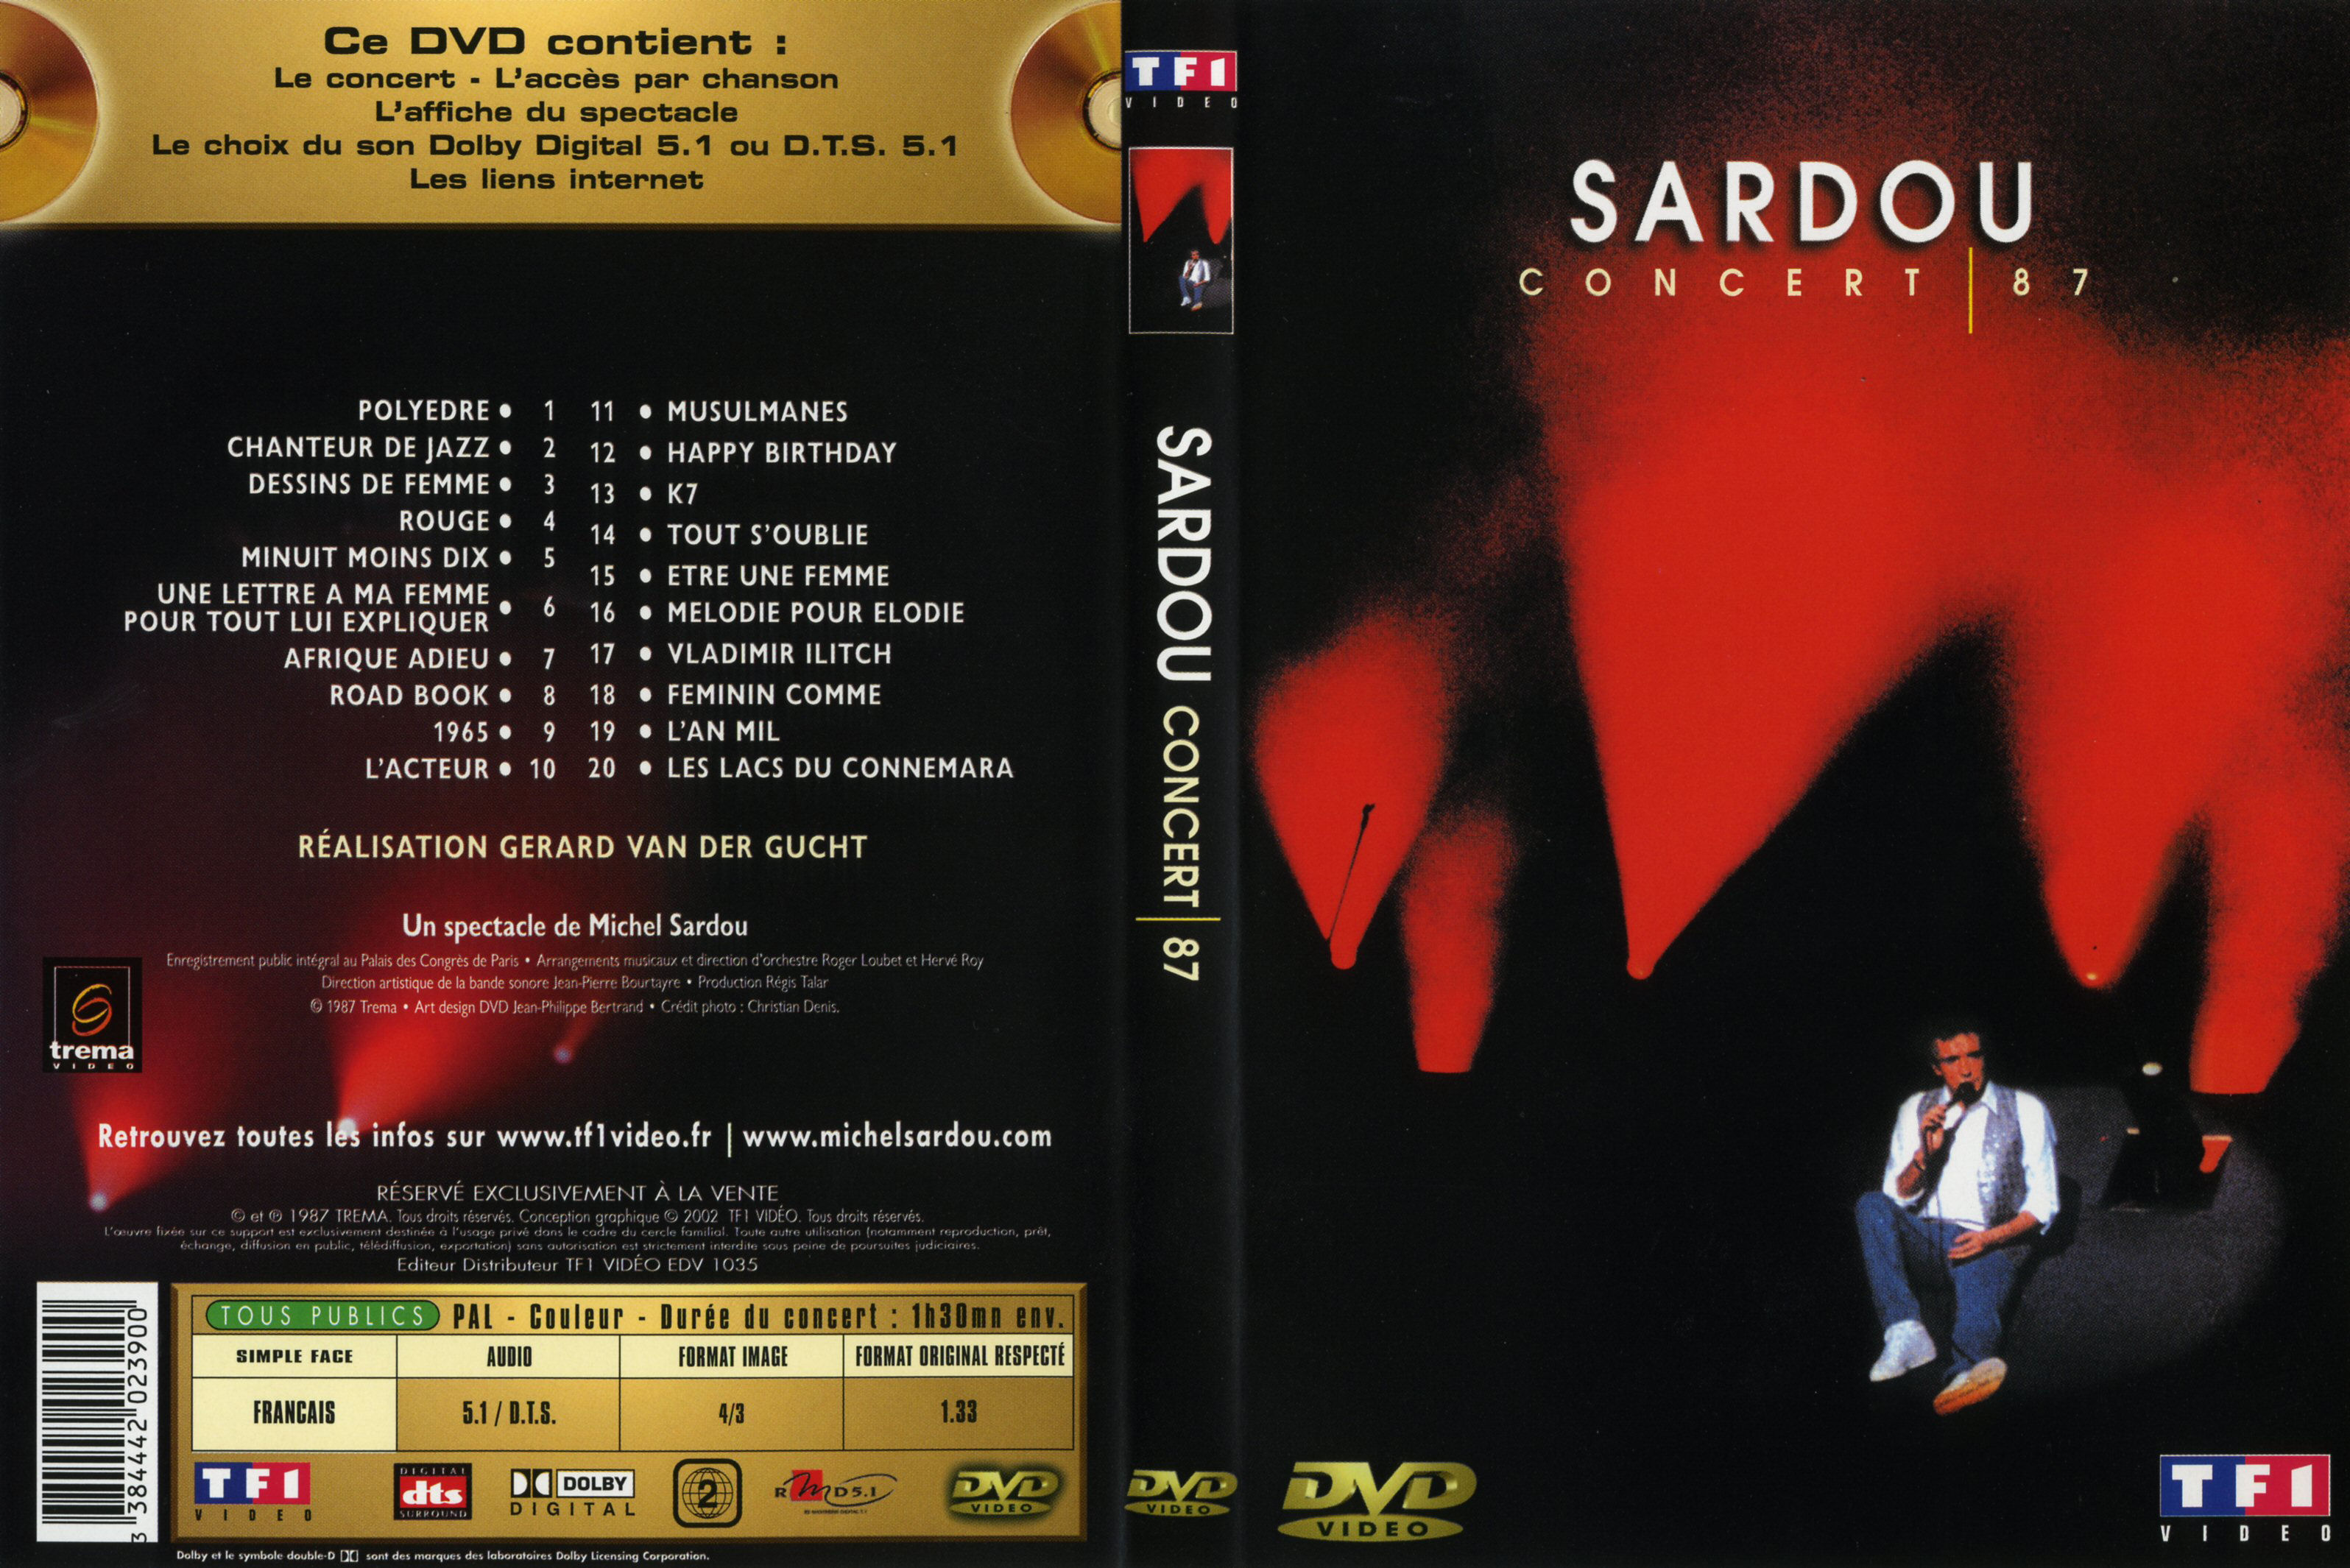 Jaquette DVD Michel Sardou Concert 87